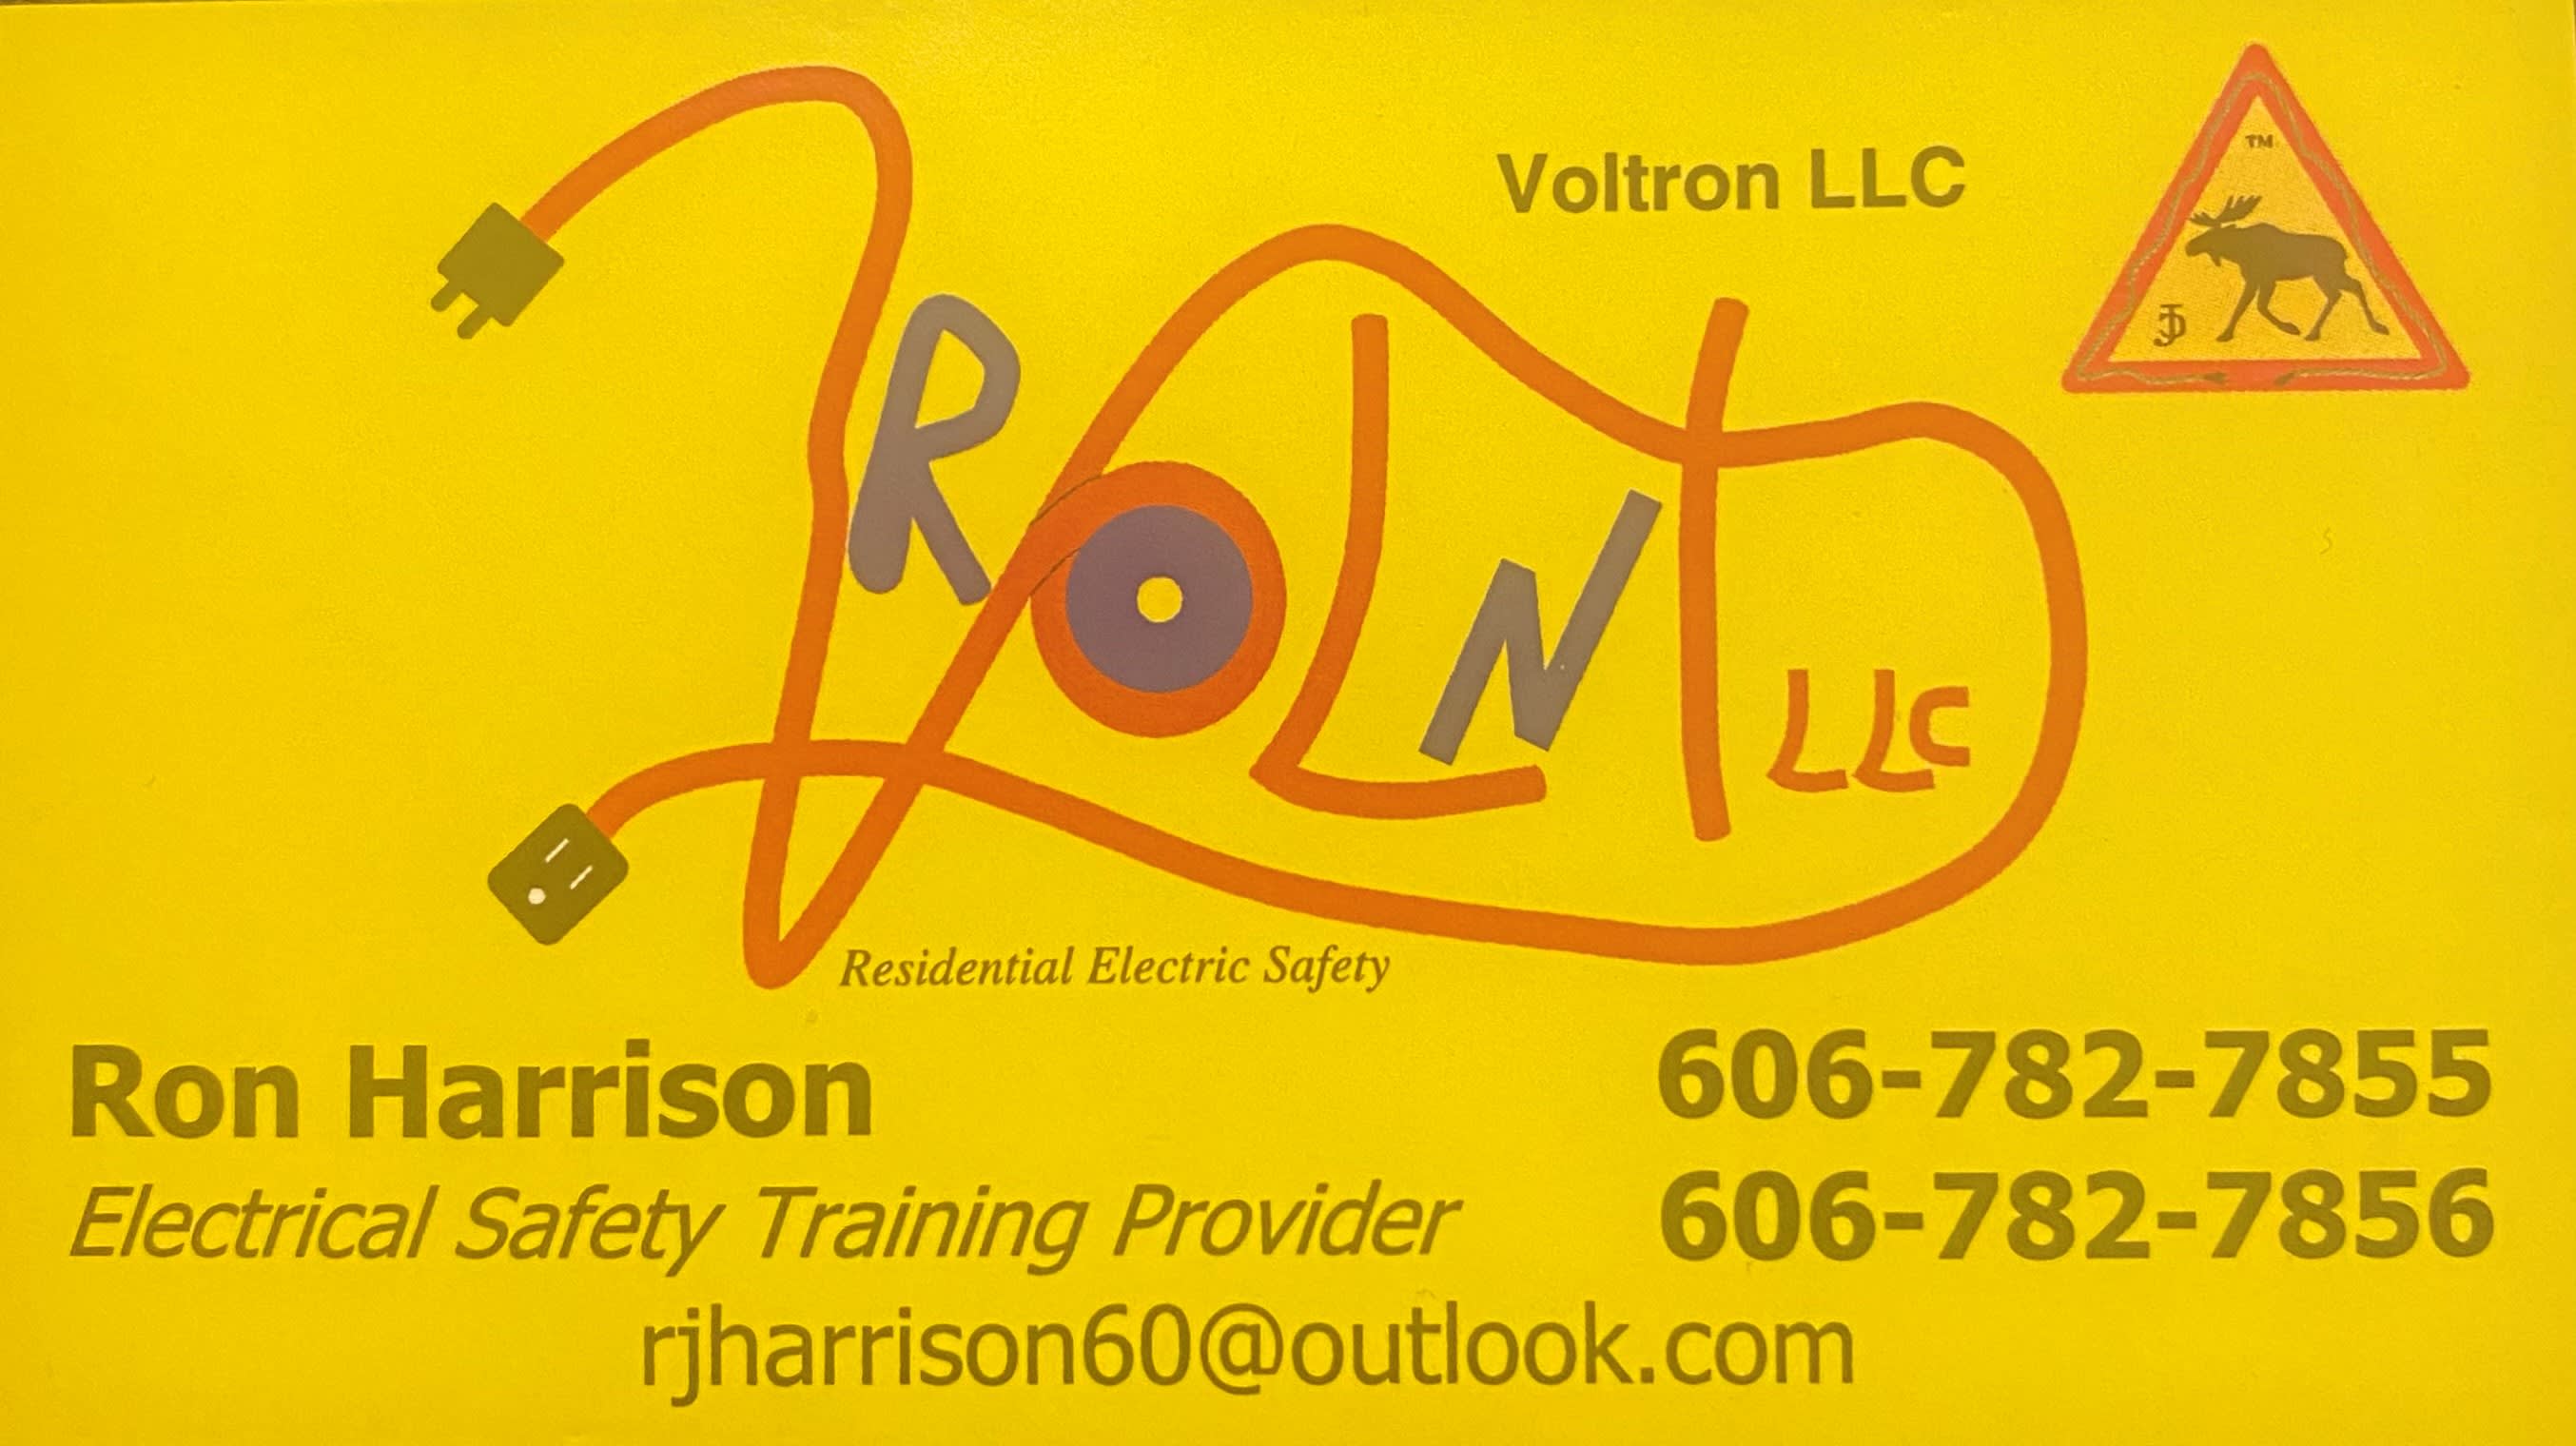 Voltron LLC